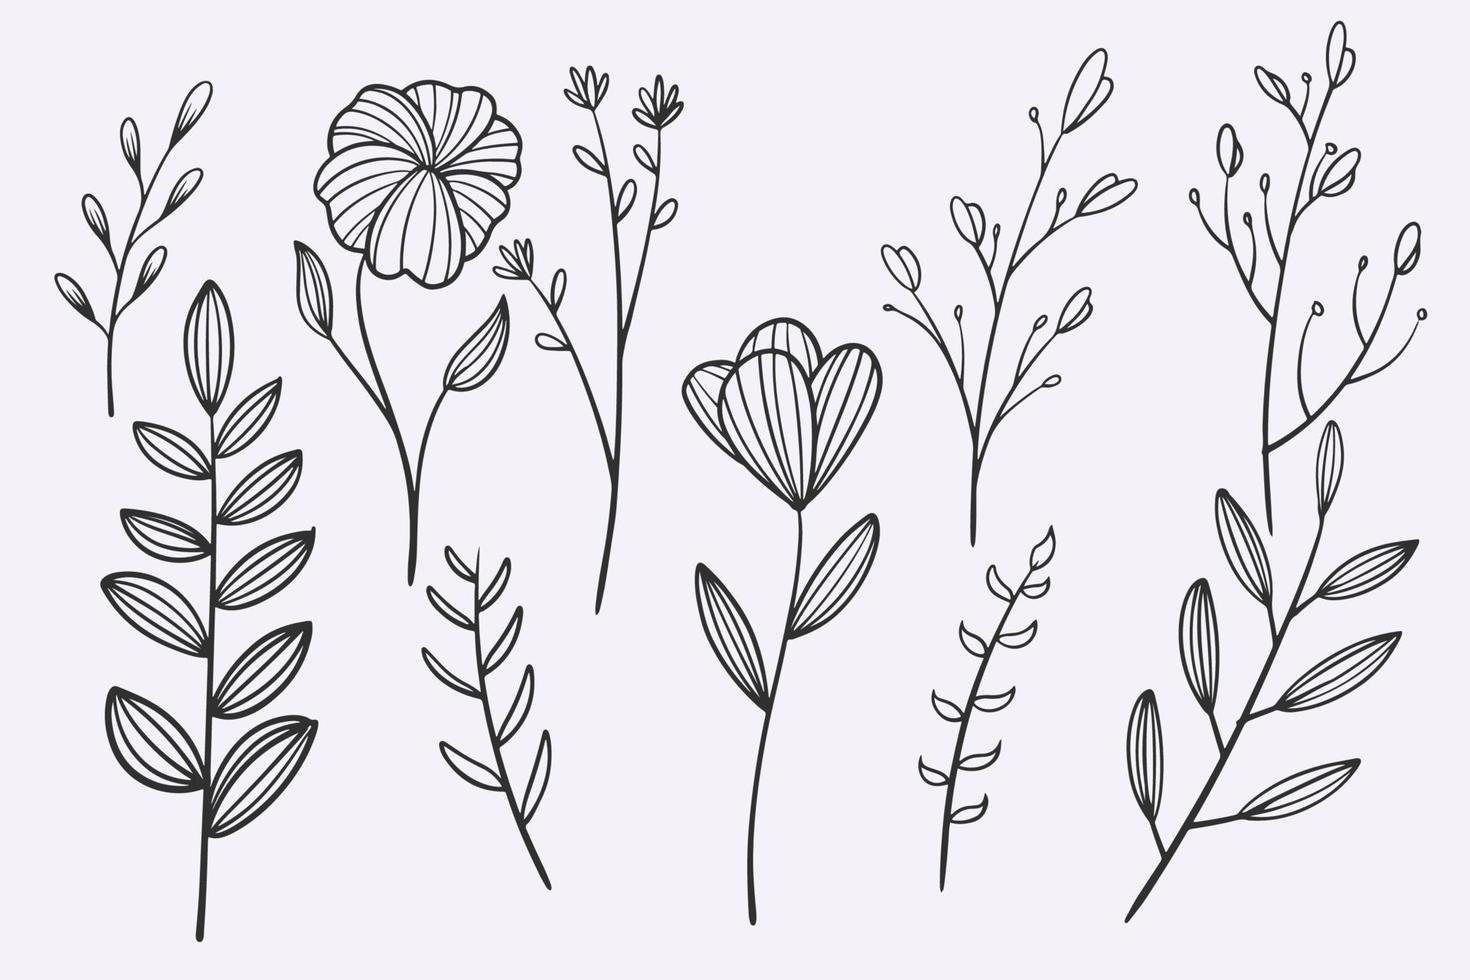 flor hojas doodle dibujado a mano vector ilustración conjunto